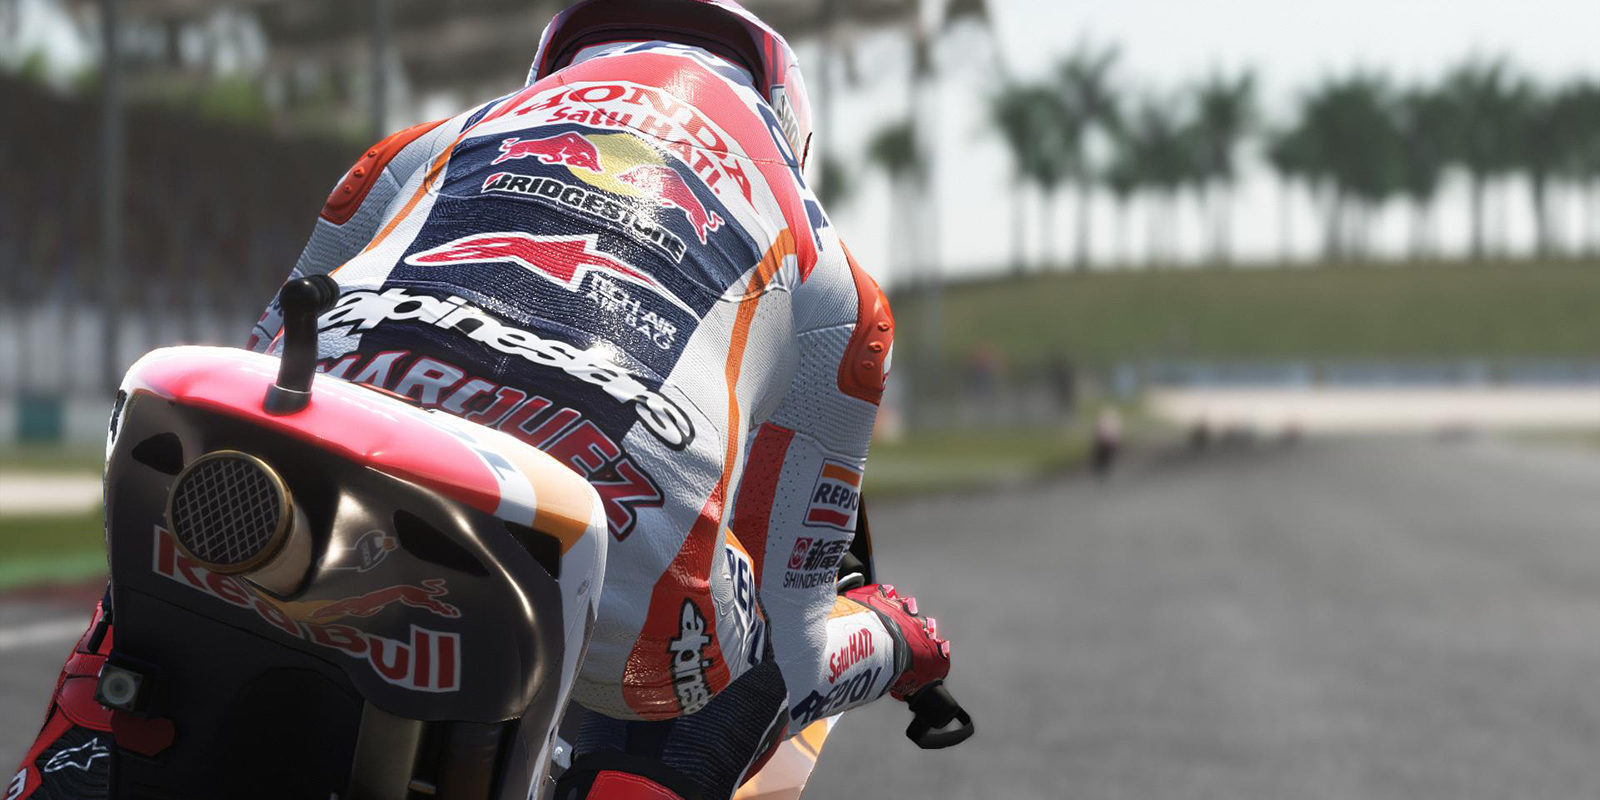 Anunciado oficialmente 'MotoGP 17' que confirma su lanzamiento para verano